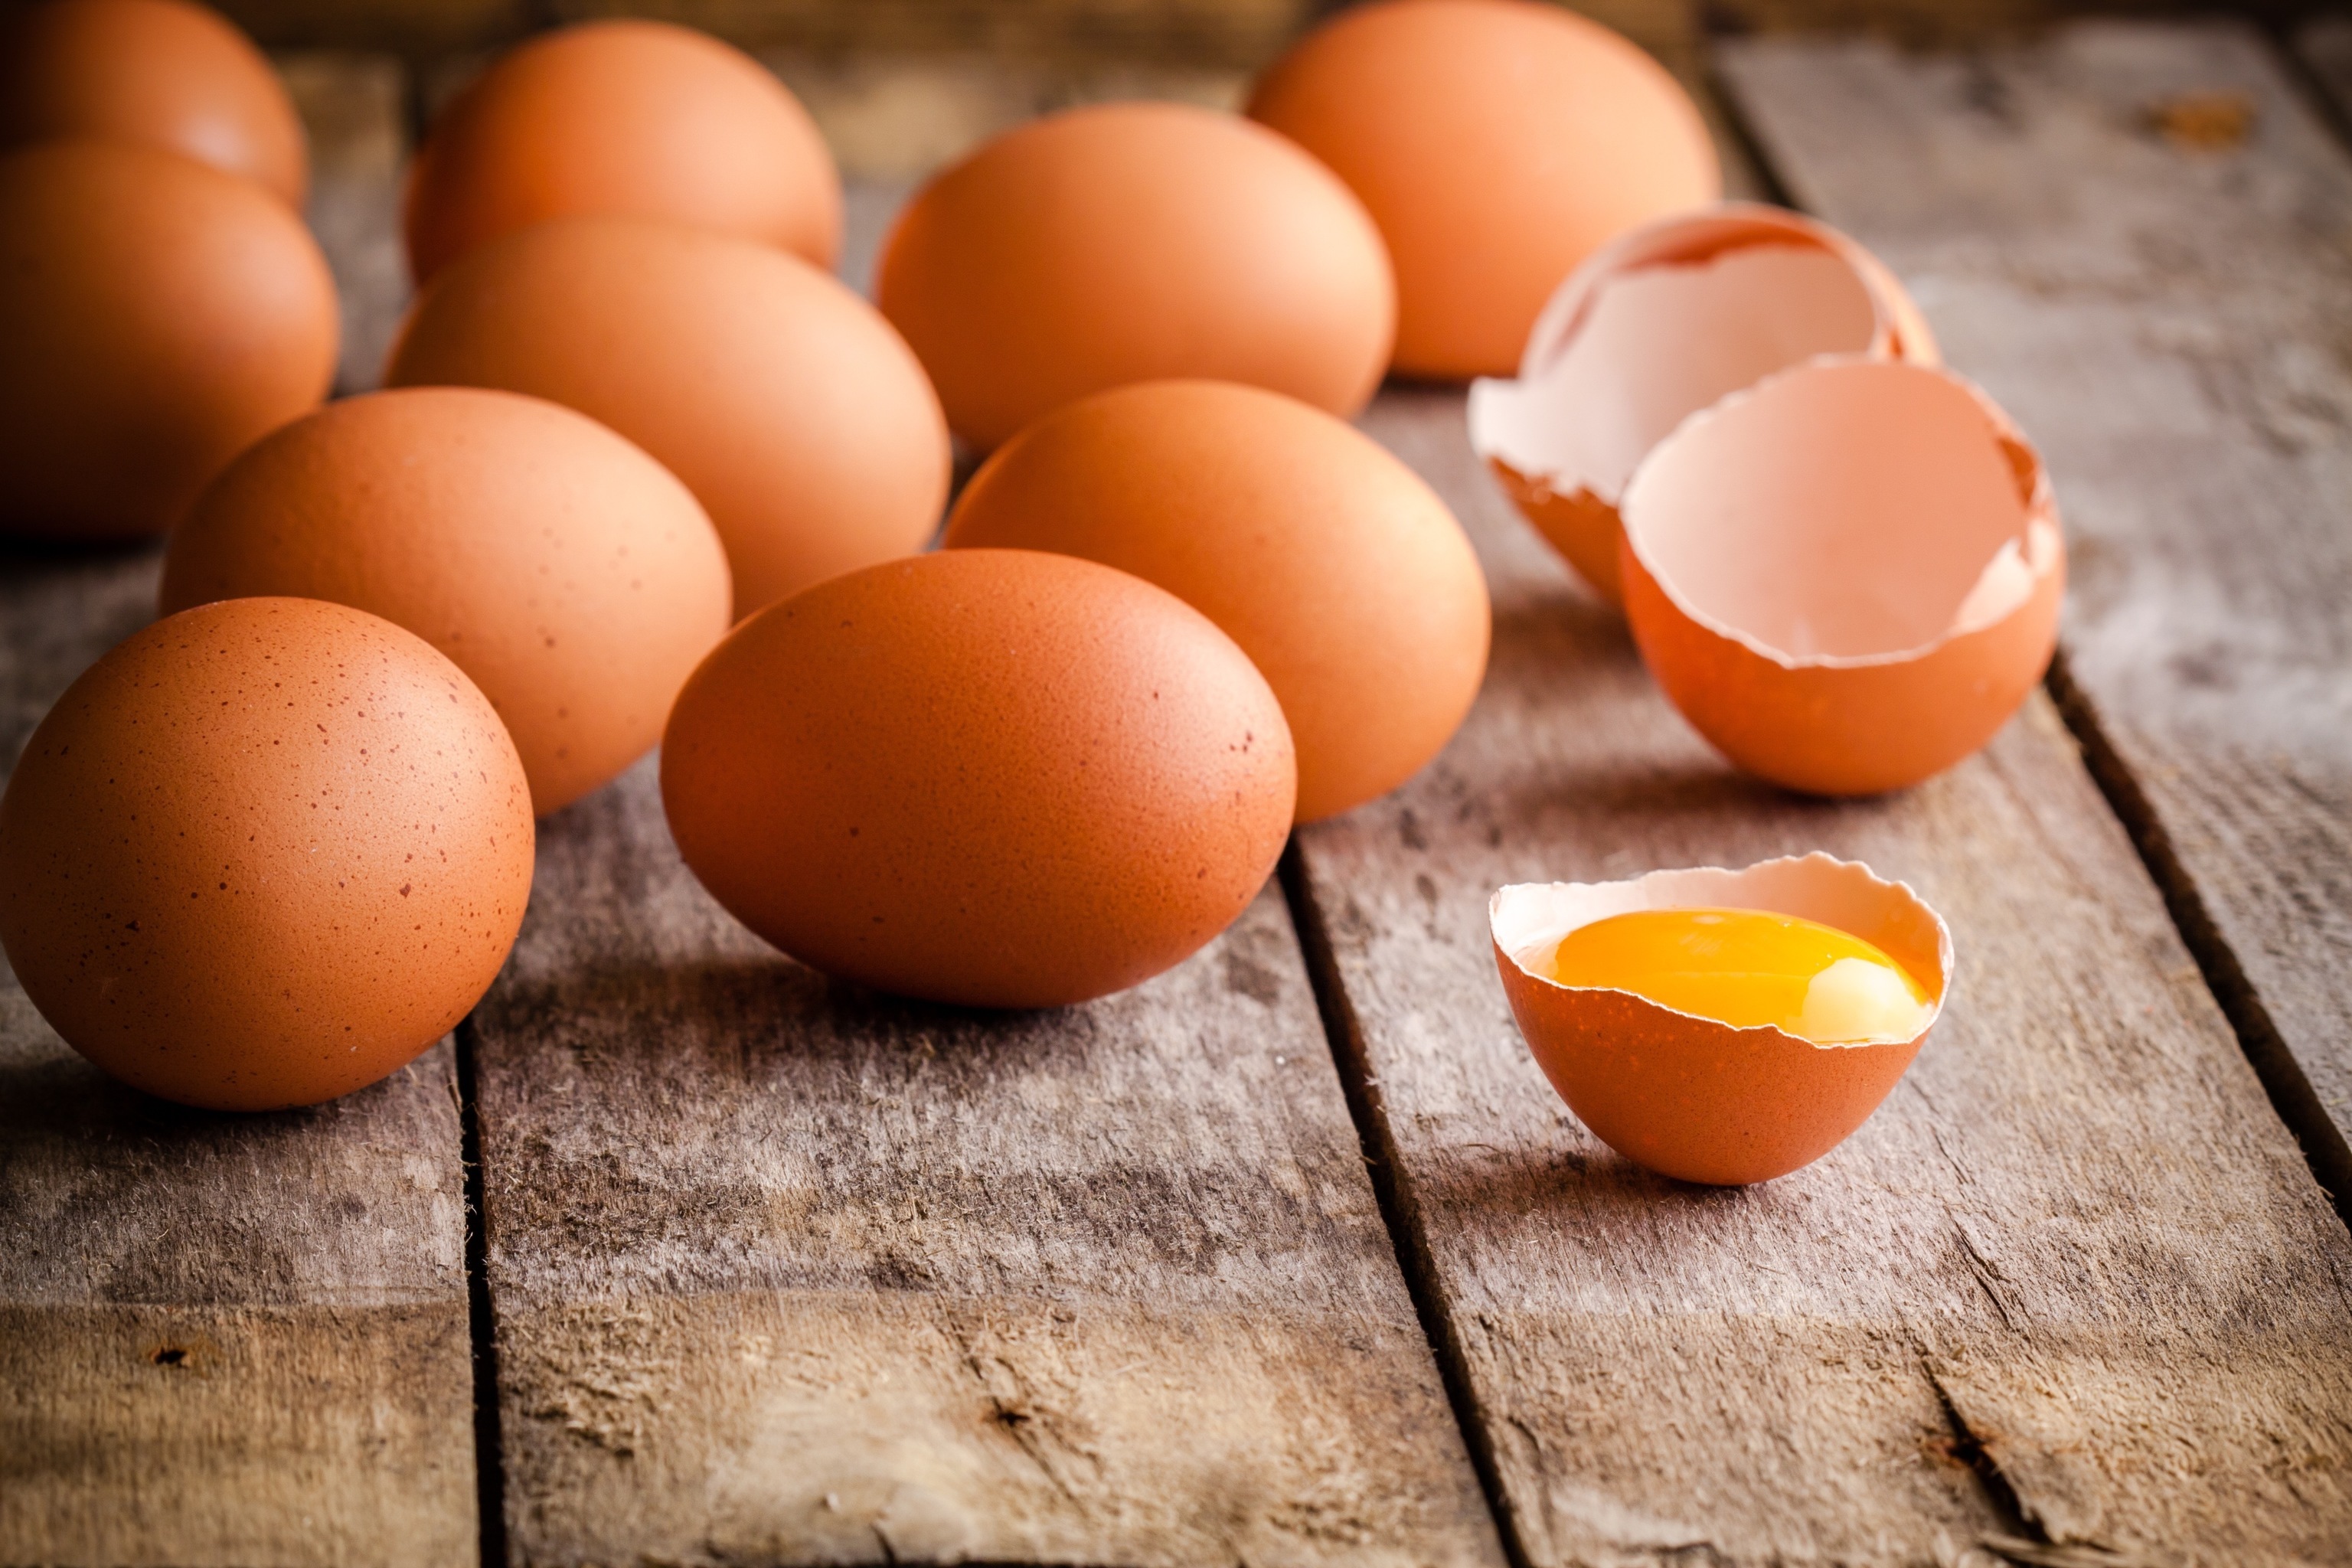 La frescura o el mal estado de los huevos puede detectarse con el truco del vaso de agua.